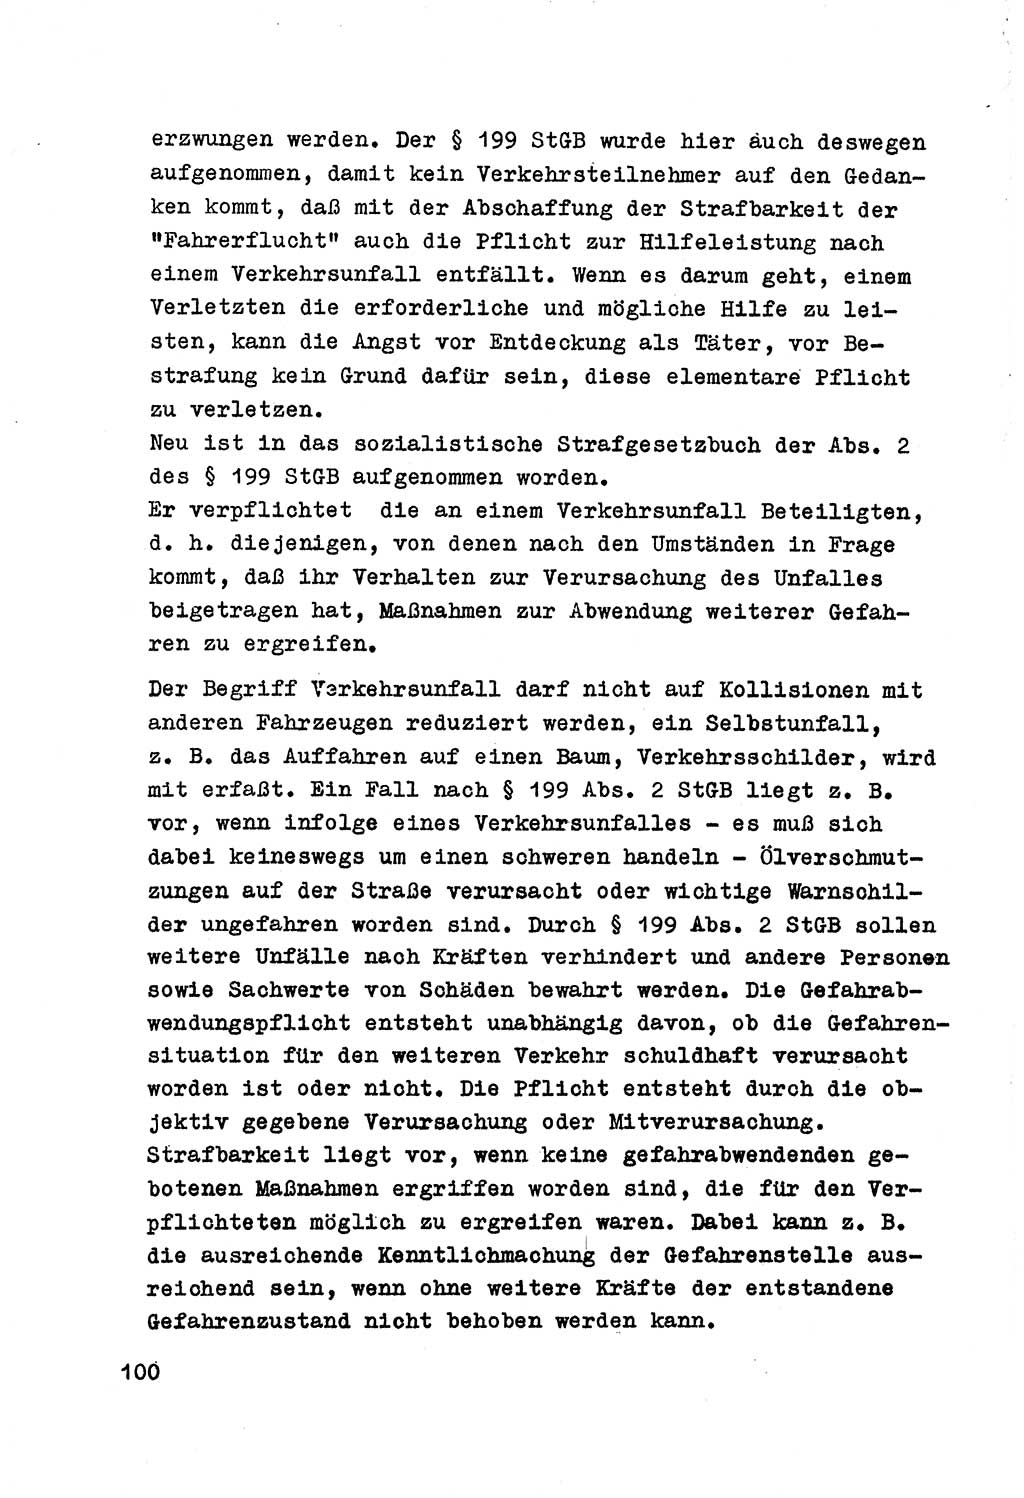 Strafrecht der DDR (Deutsche Demokratische Republik), Besonderer Teil, Lehrmaterial, Heft 7 1970, Seite 100 (Strafr. DDR BT Lehrmat. H. 7 1970, S. 100)